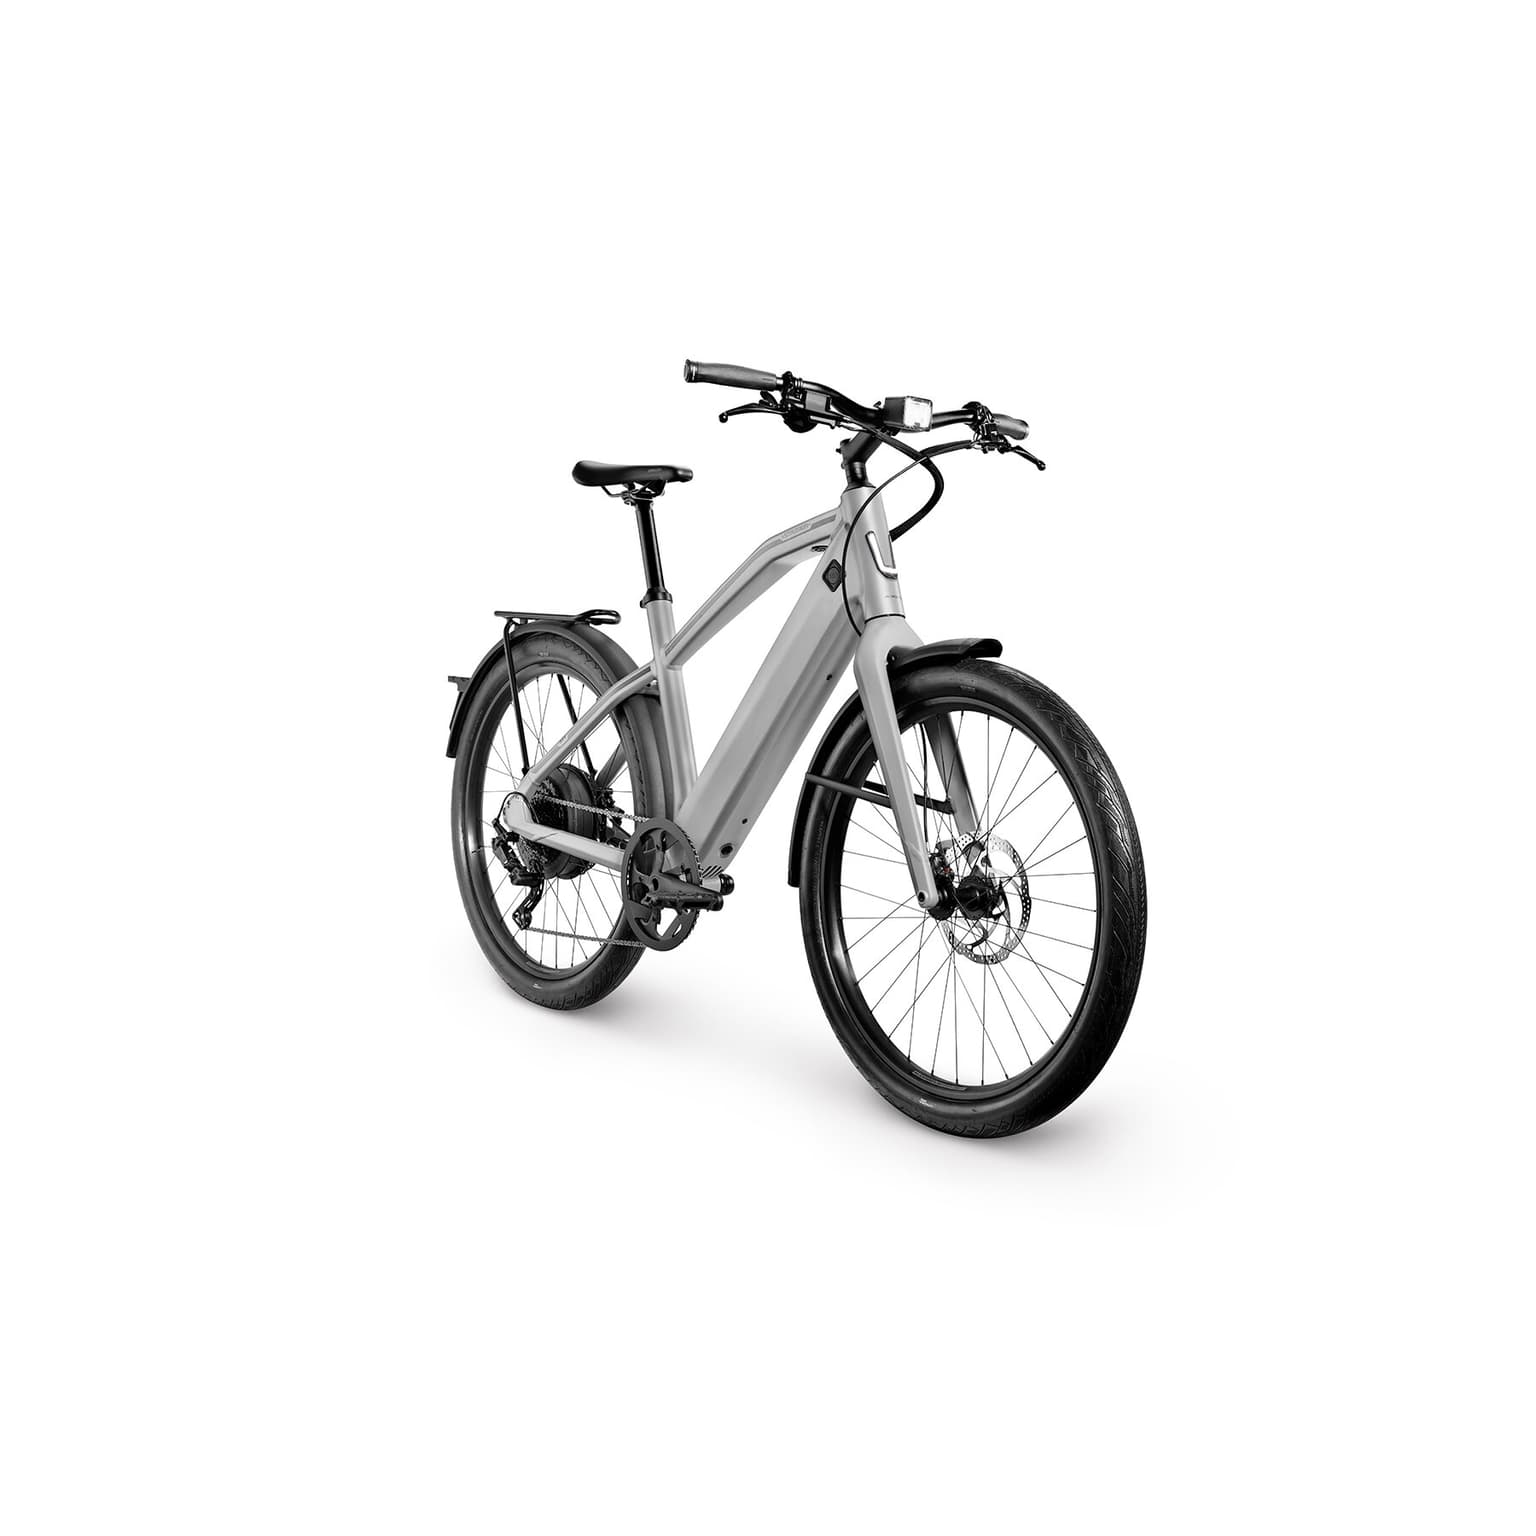 Stromer Stromer ST1 Sport Bicicletta elettrica 45km/h grigio-chiaro 2